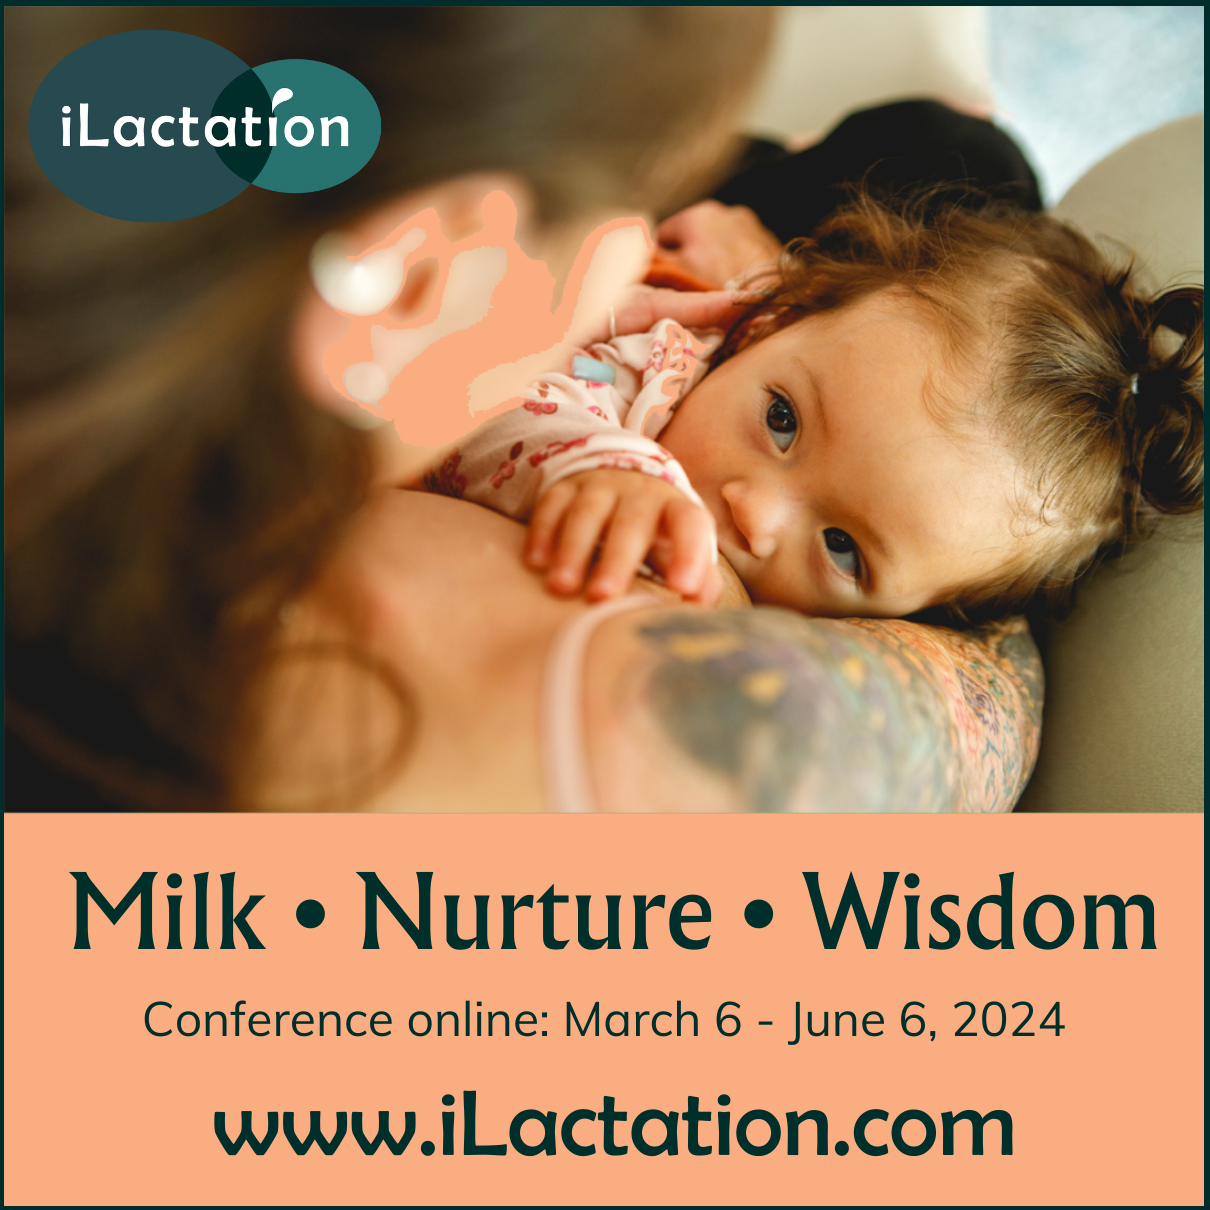 iLactation’s online breastfeeding conference, Milk • Nurture • Wisdom